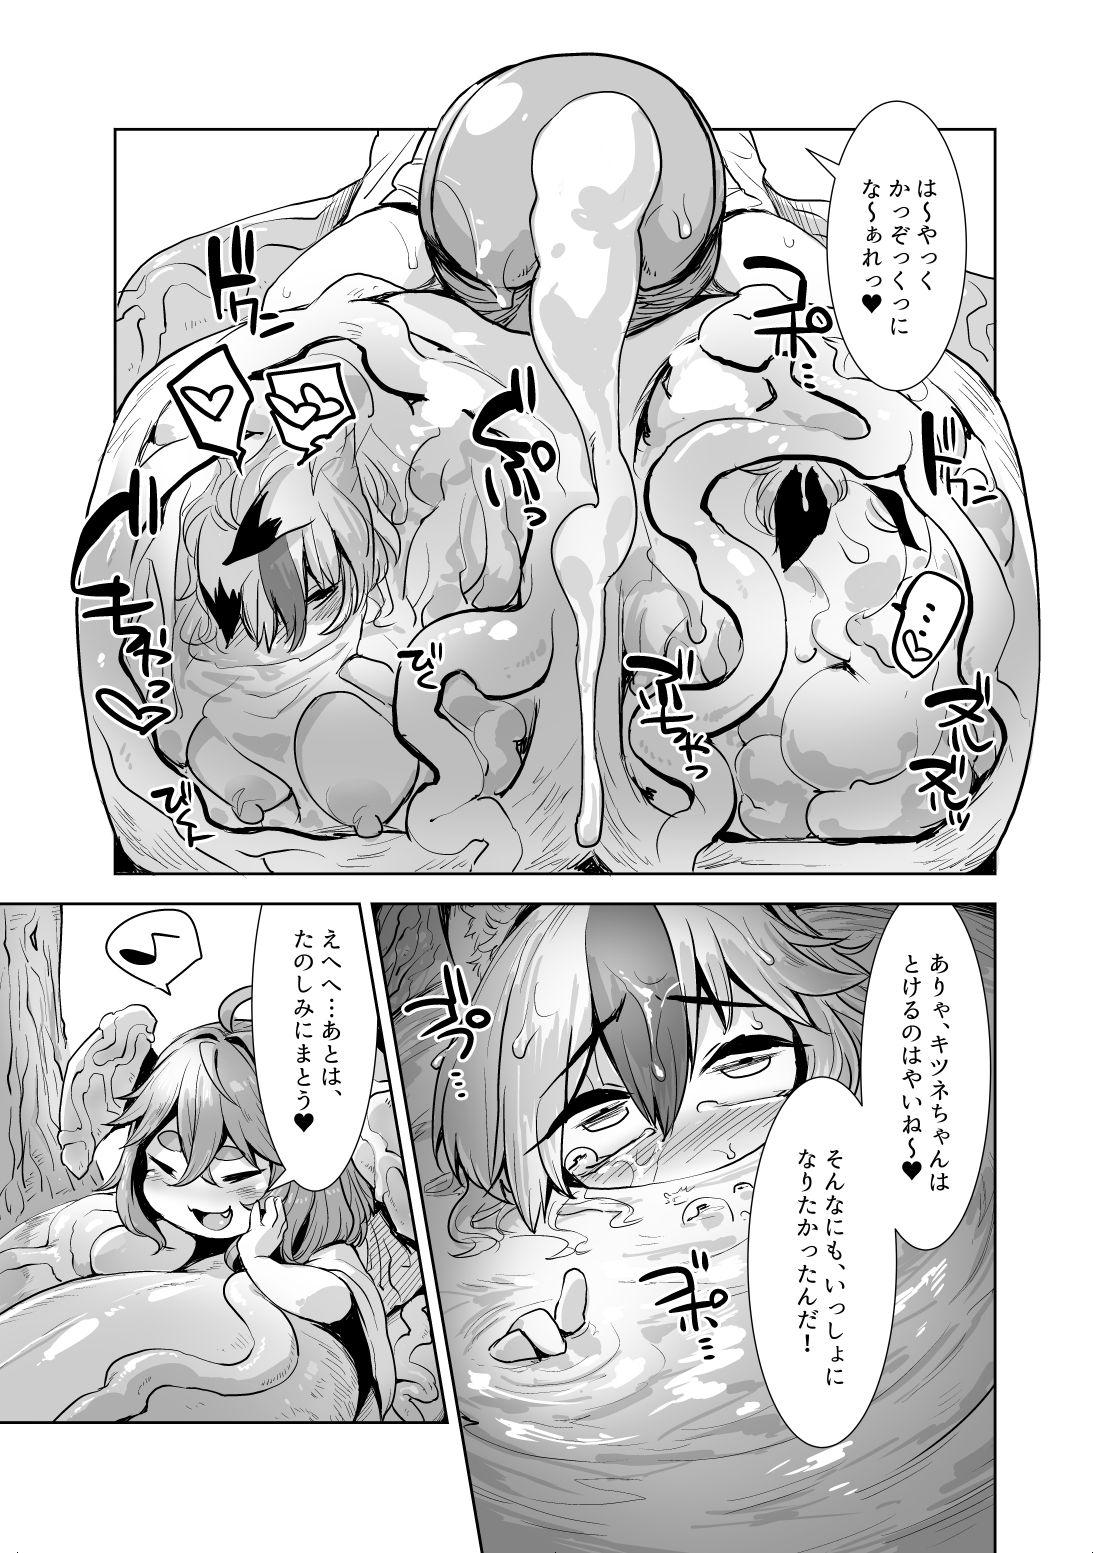 Blowjob Yappari Uchinoko wa Kawaii na Nude - Page 5